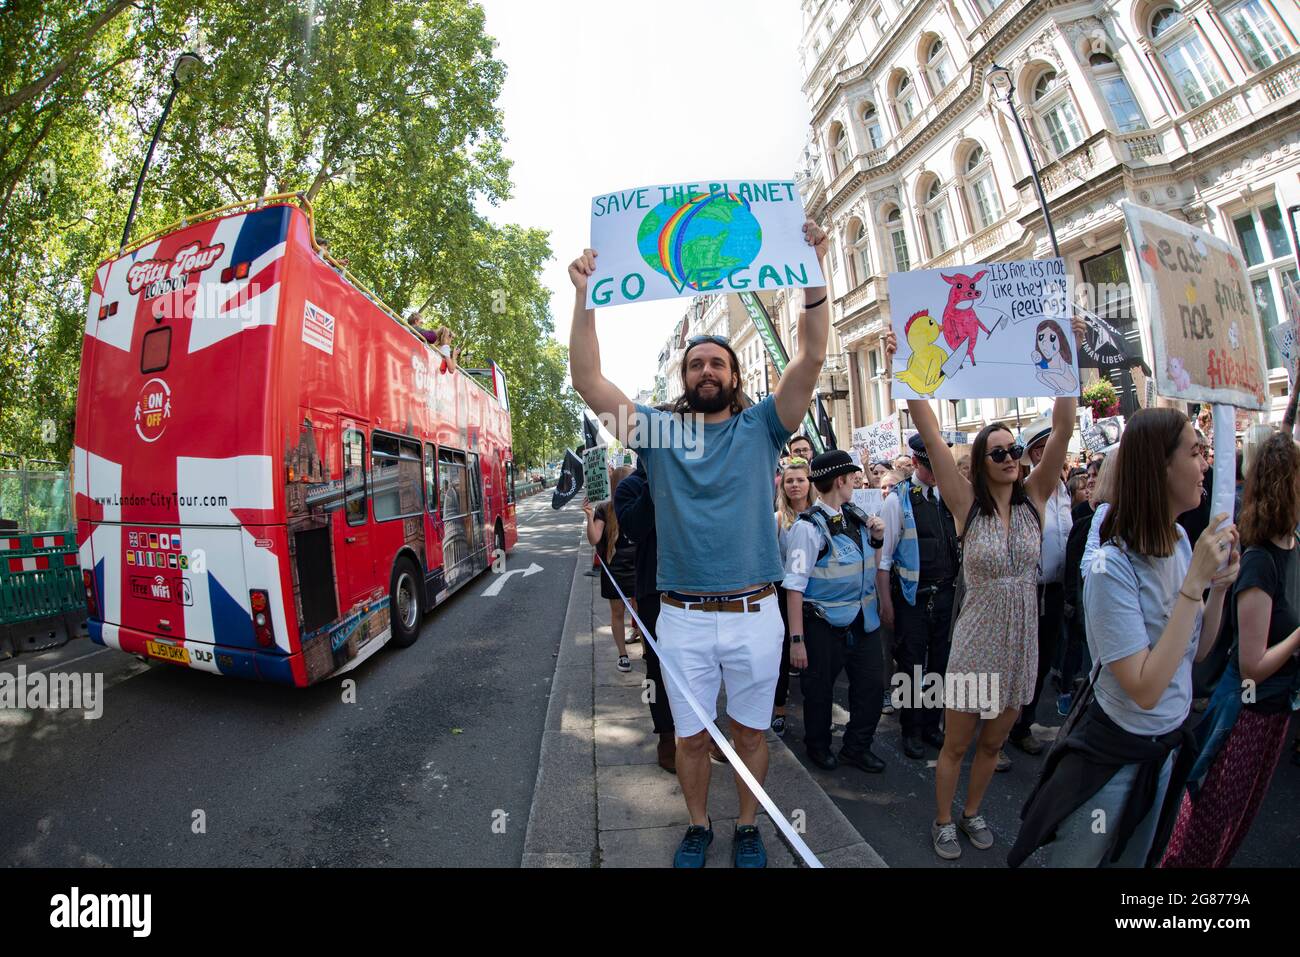 Die Offiziellen Tierrechte März London 2019. Aktivisten marschieren am 17. August 2019 durch die britische Hauptstadt. Rette Den Planeten, Geh Vegan Stockfoto